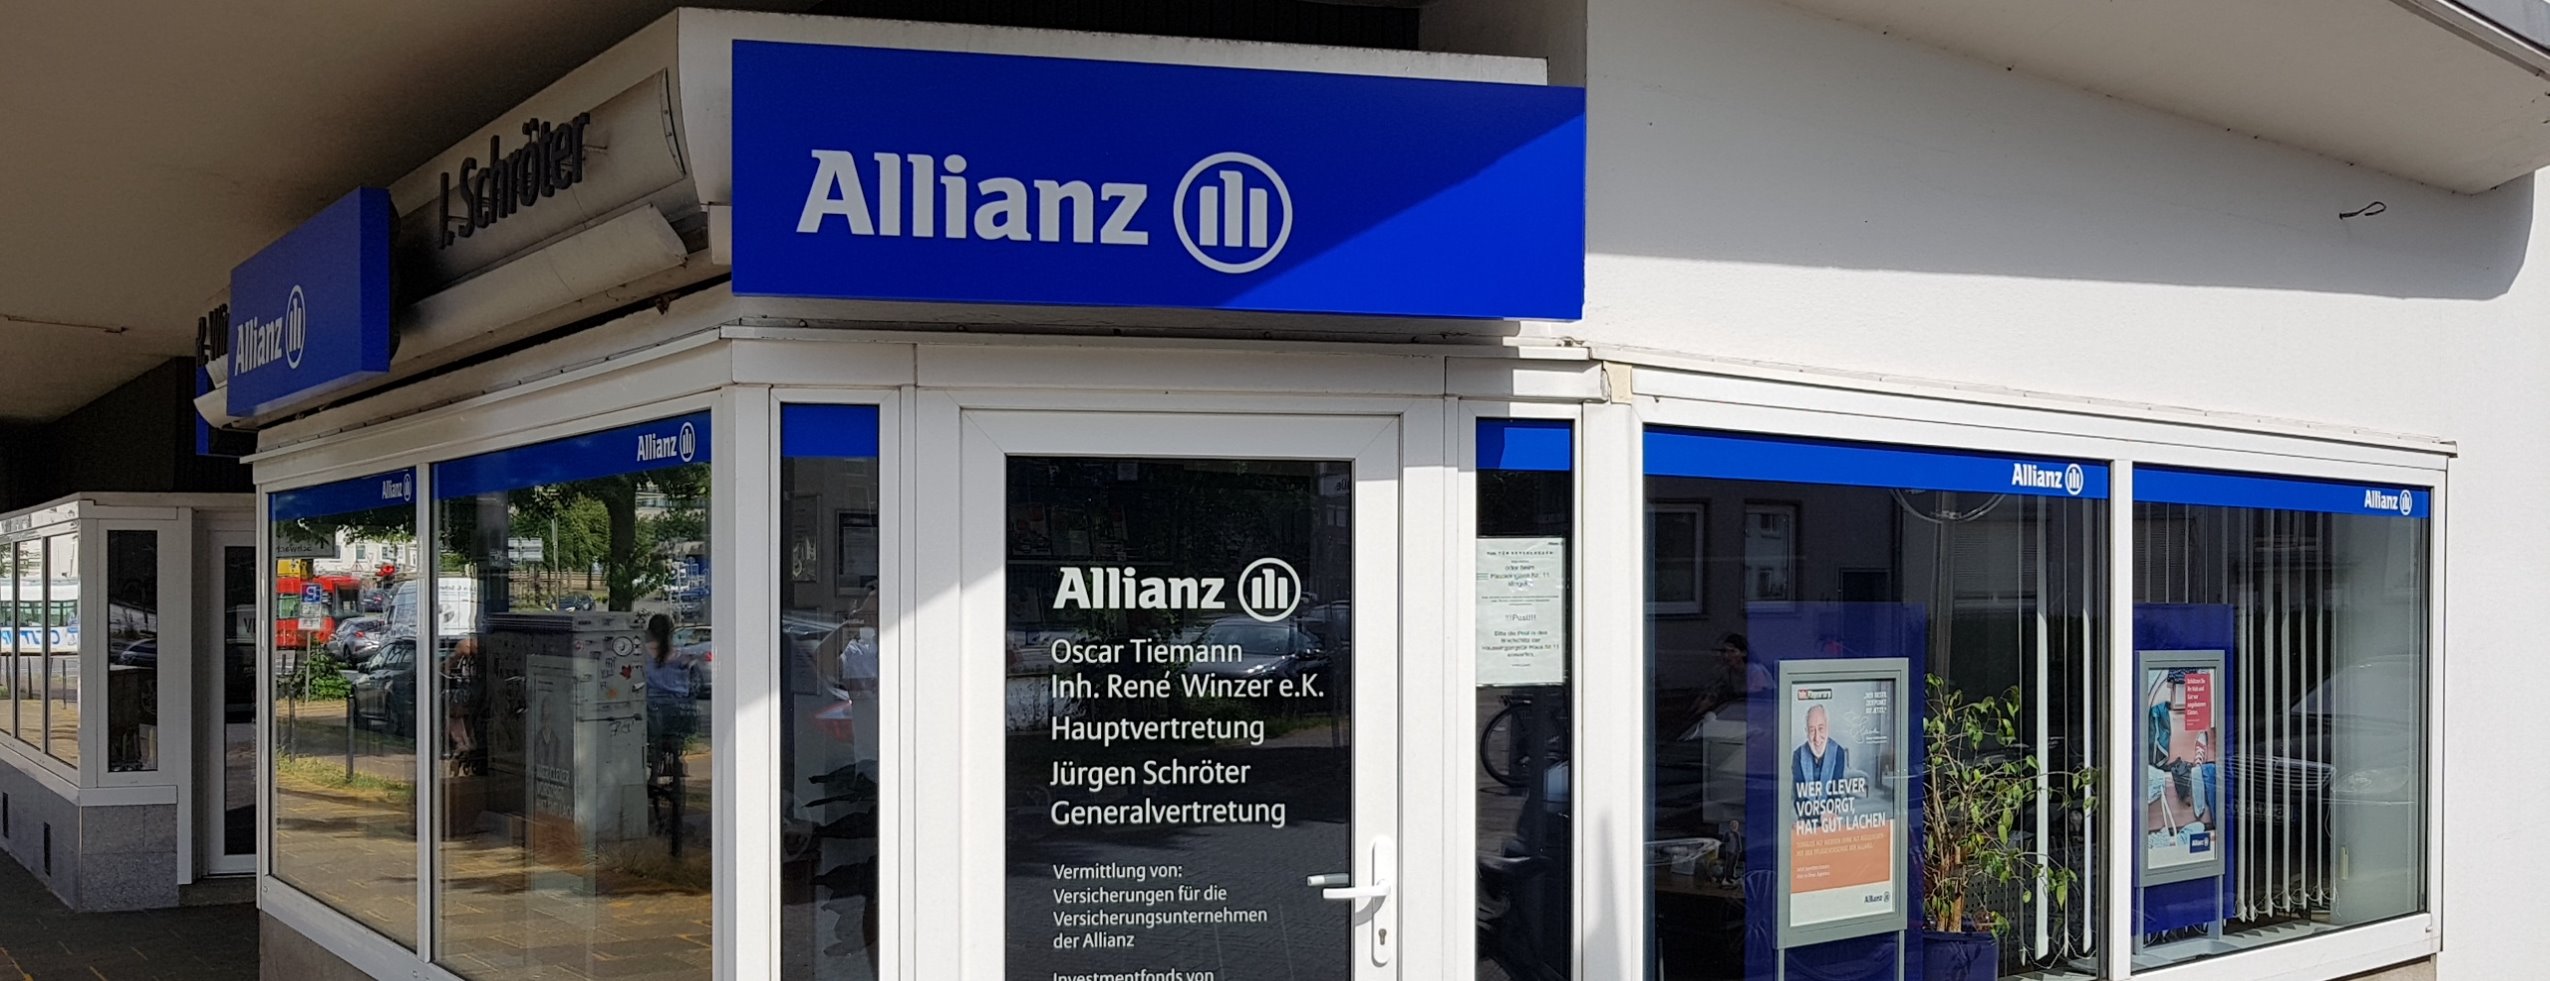 Allianz Versicherung Oscar Tiemann Inh. Rene Winzer e.K. Bremen - Zahnzusatz Kfz Recht Rendite Zinsen